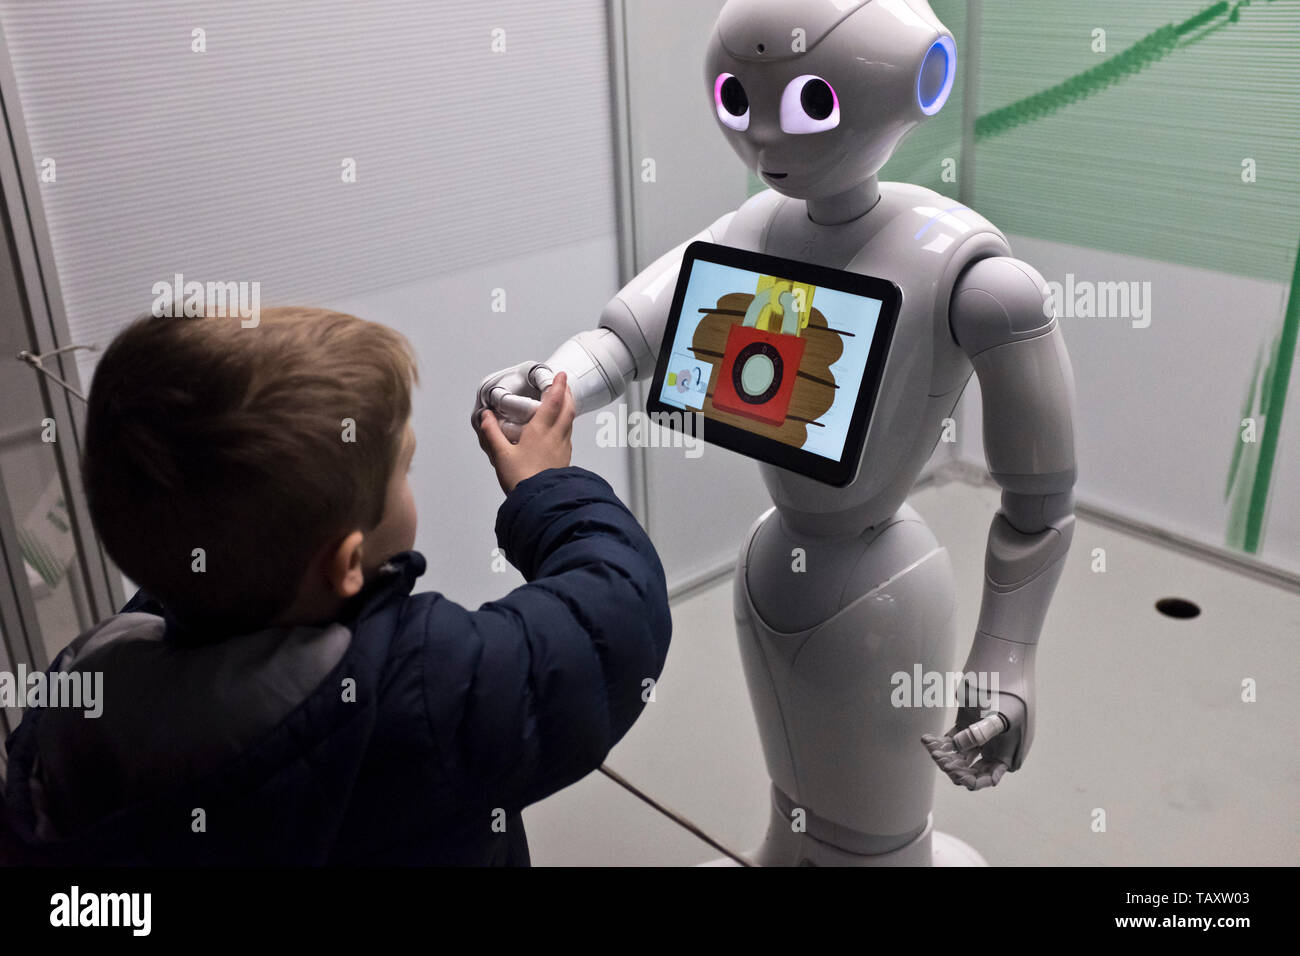 dh Musée national de l'Ecosse CHAMBER STREET exposition de robot D'ÉDIMBOURG Pepper android humanoid interagissant garçon enfant secouant les mains interagir royaume-uni Banque D'Images